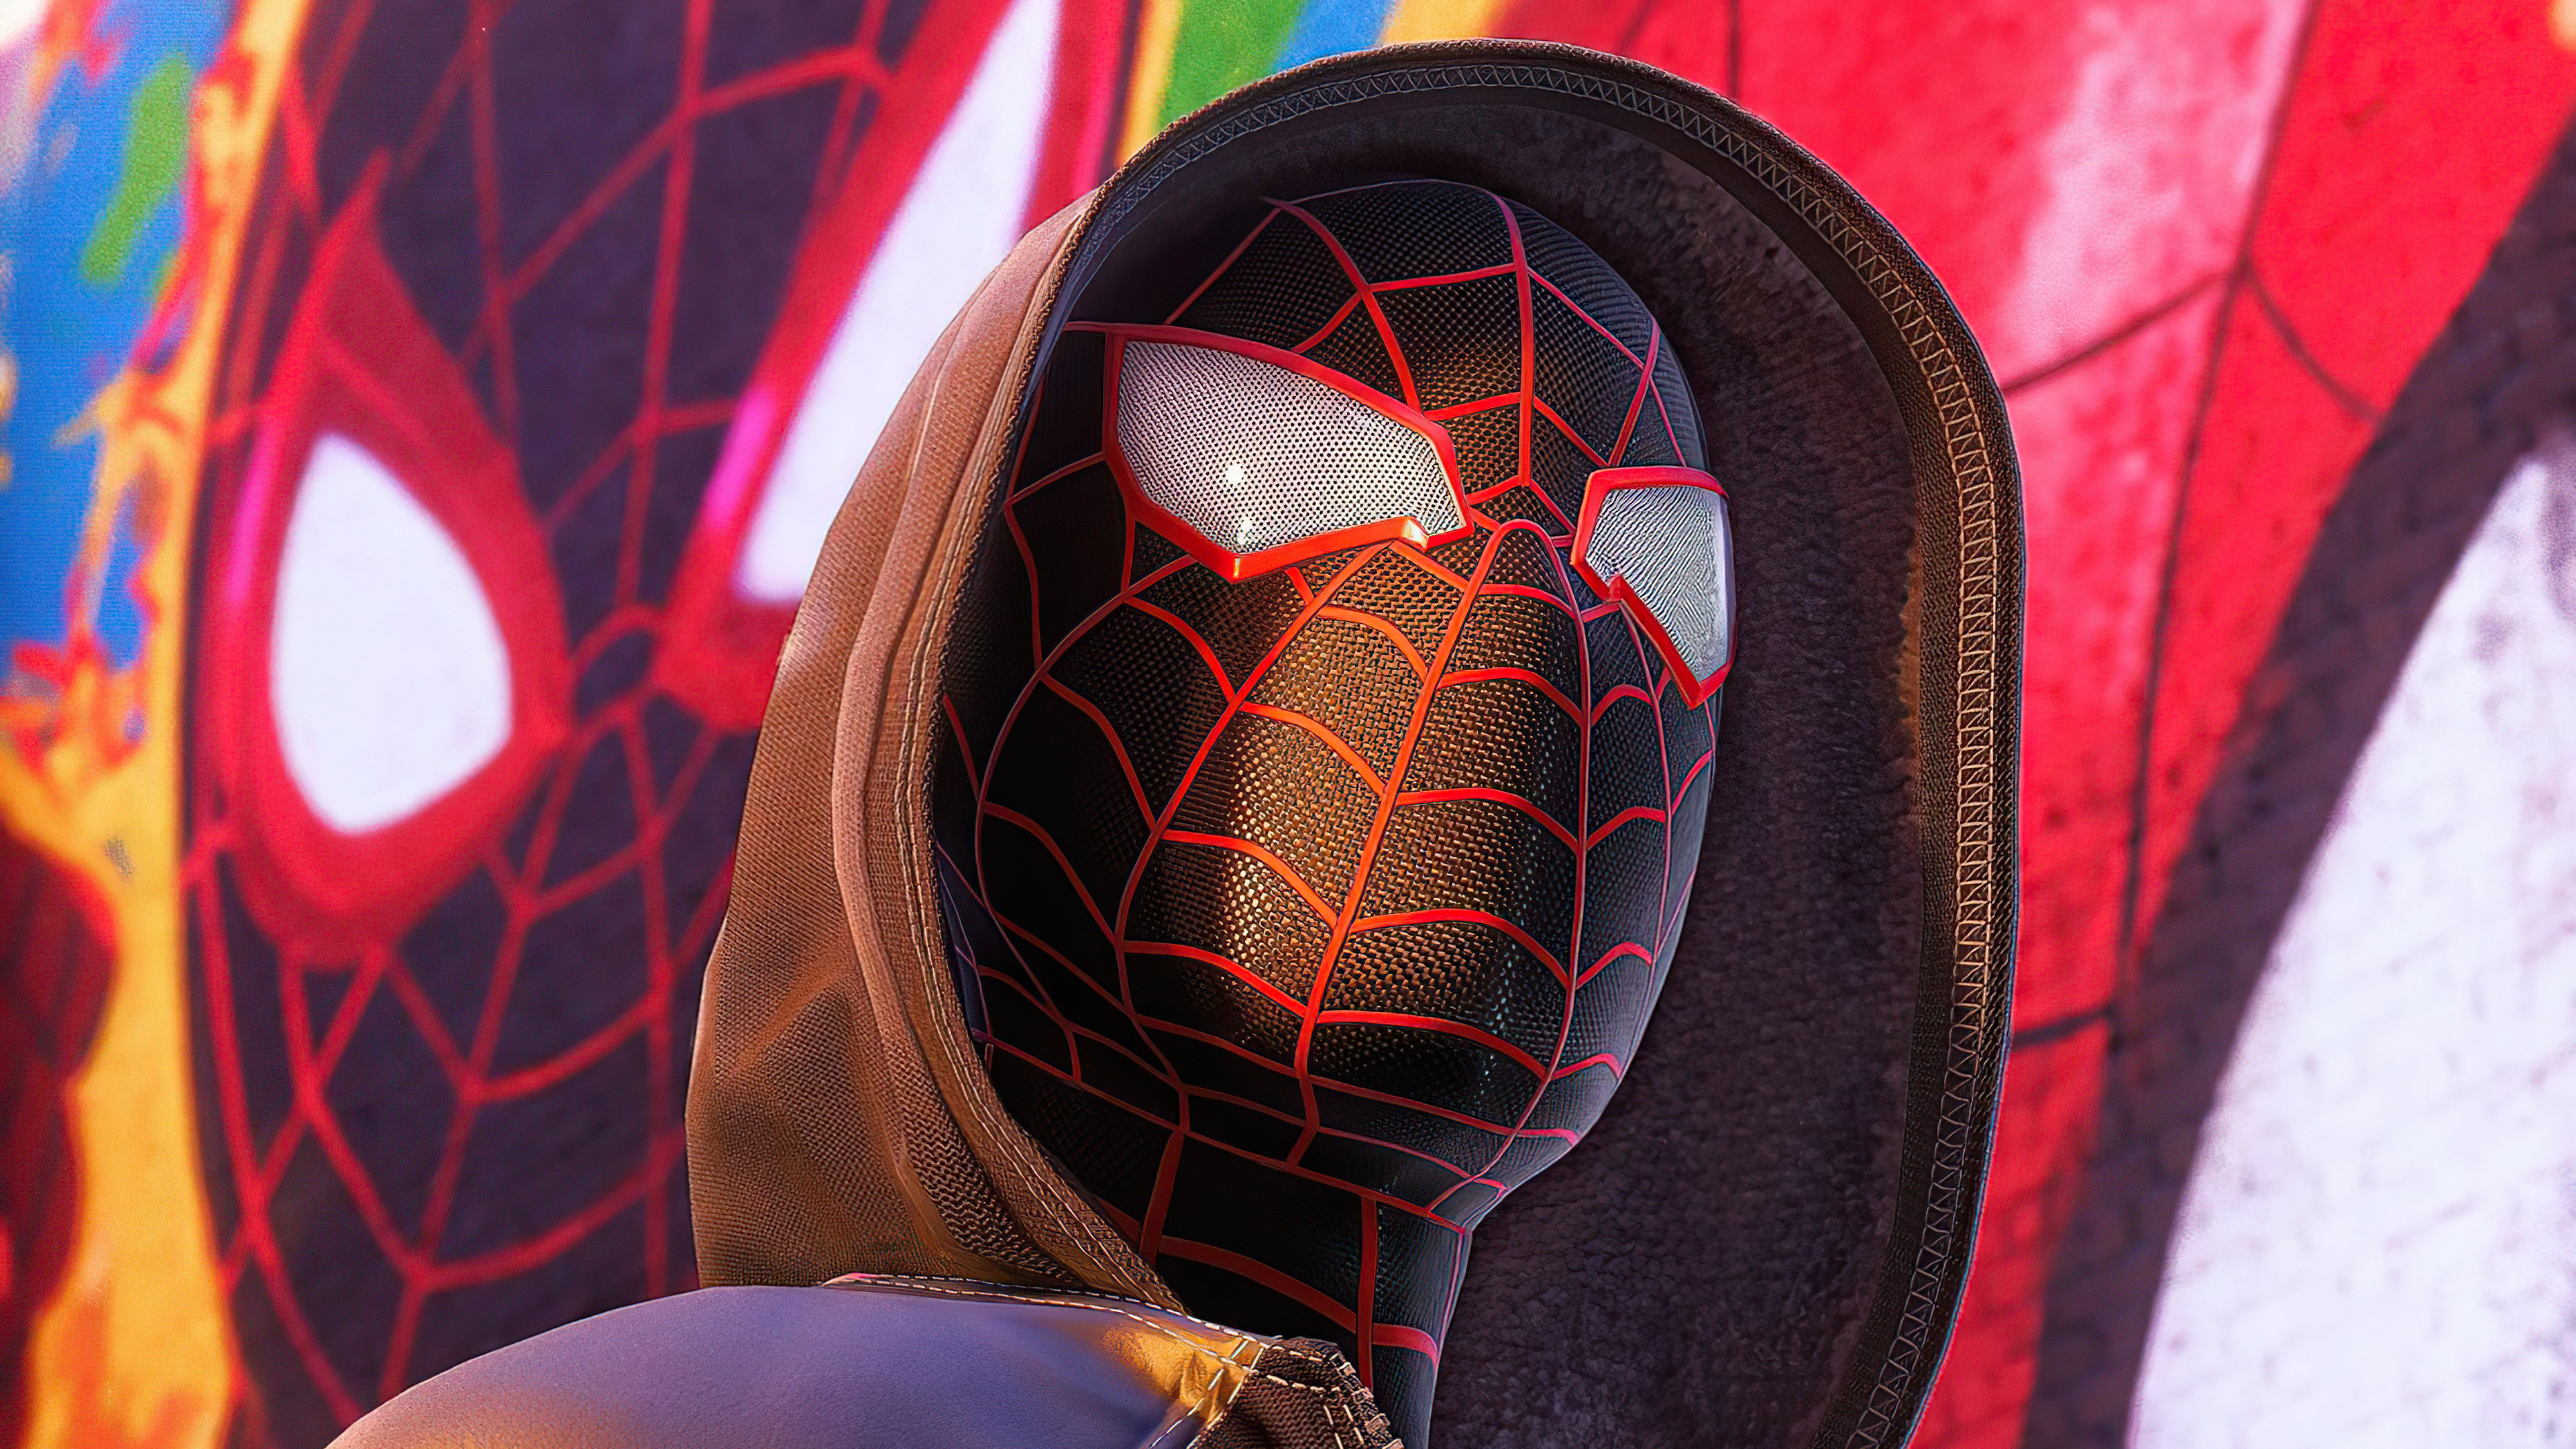 Marvel's Spider Man: Miles Morales Wallpaper 4K, 2020 Games, Games